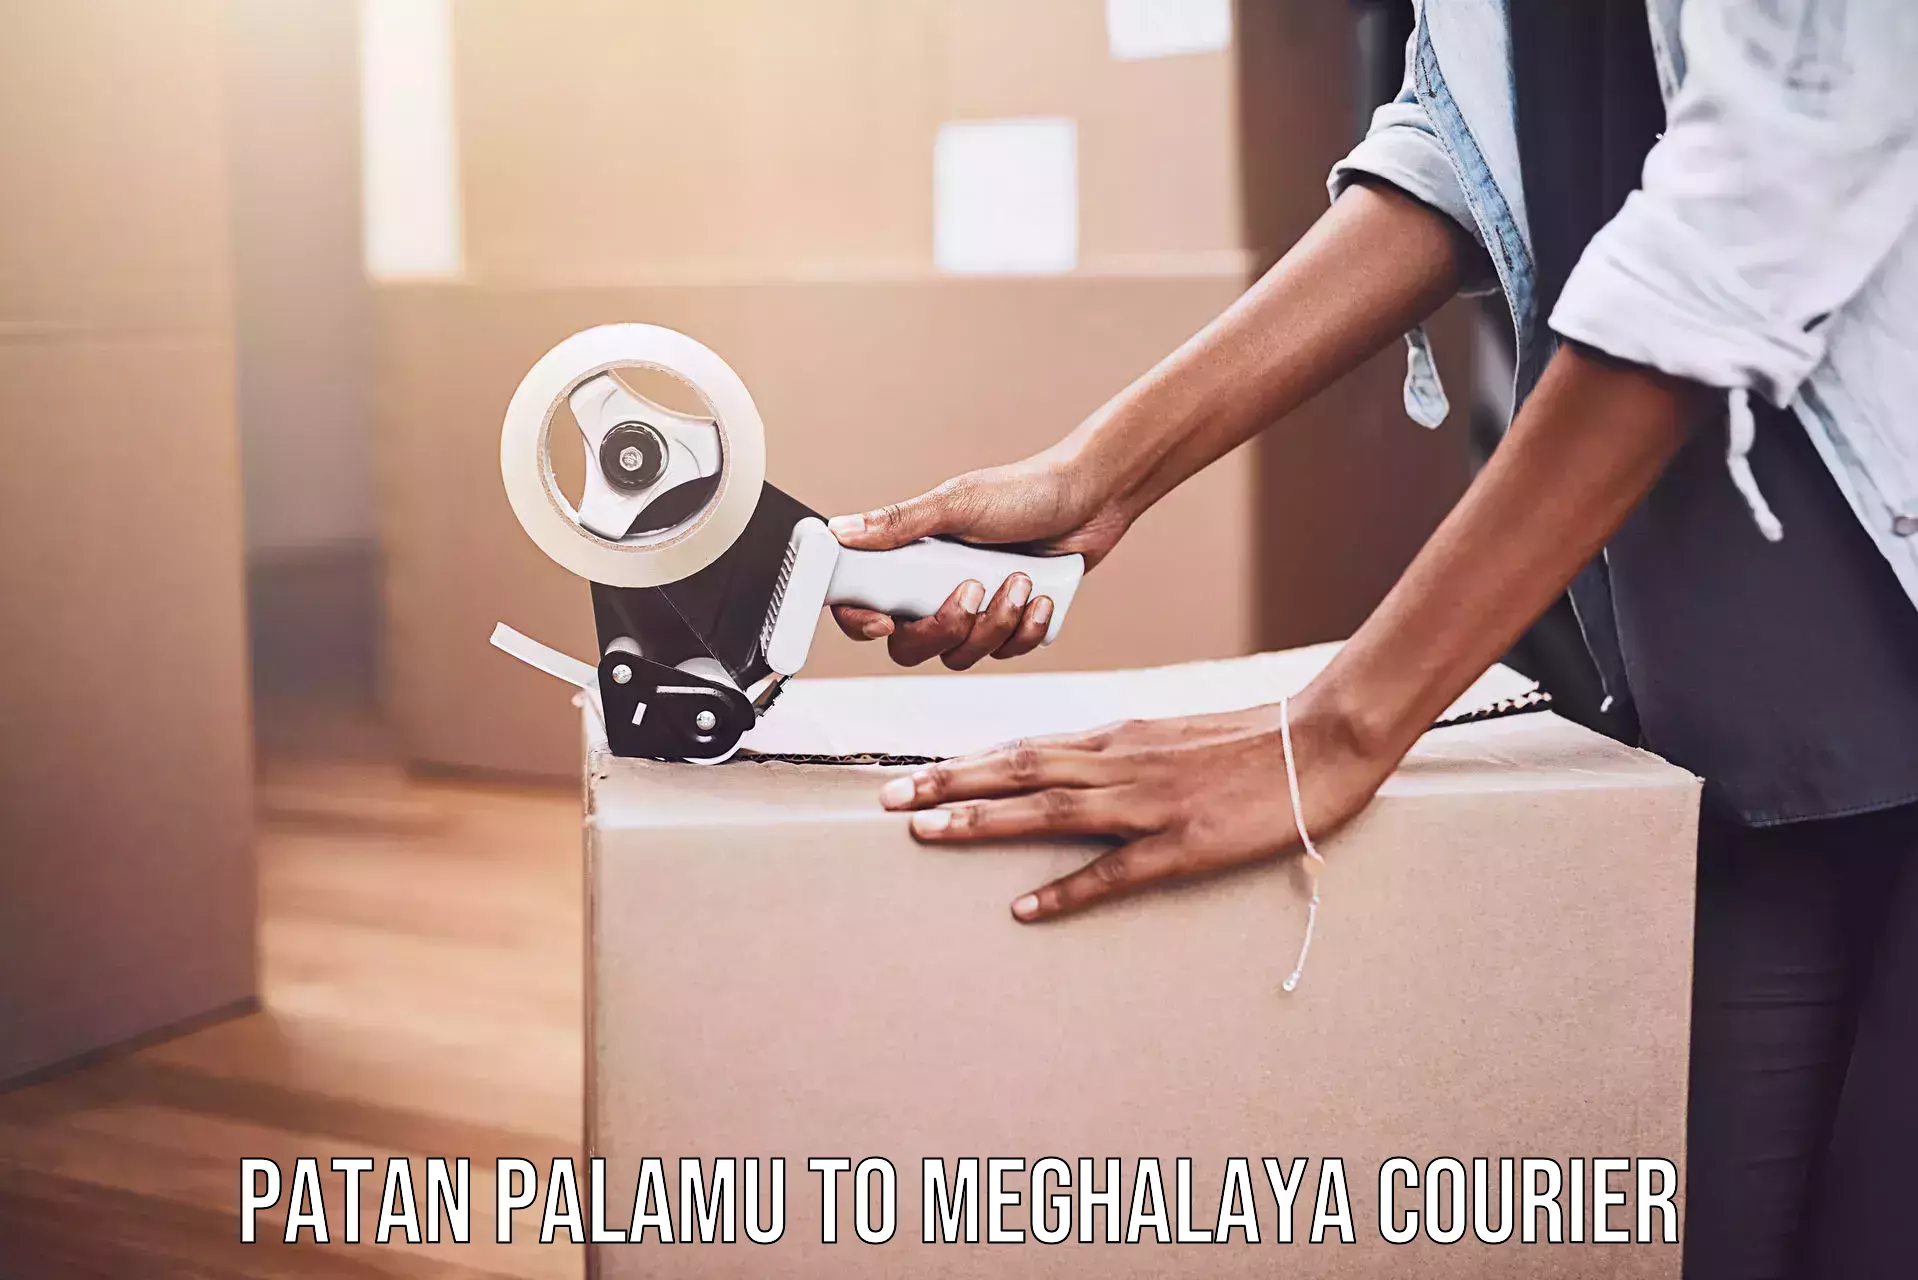 Local delivery service Patan Palamu to Meghalaya